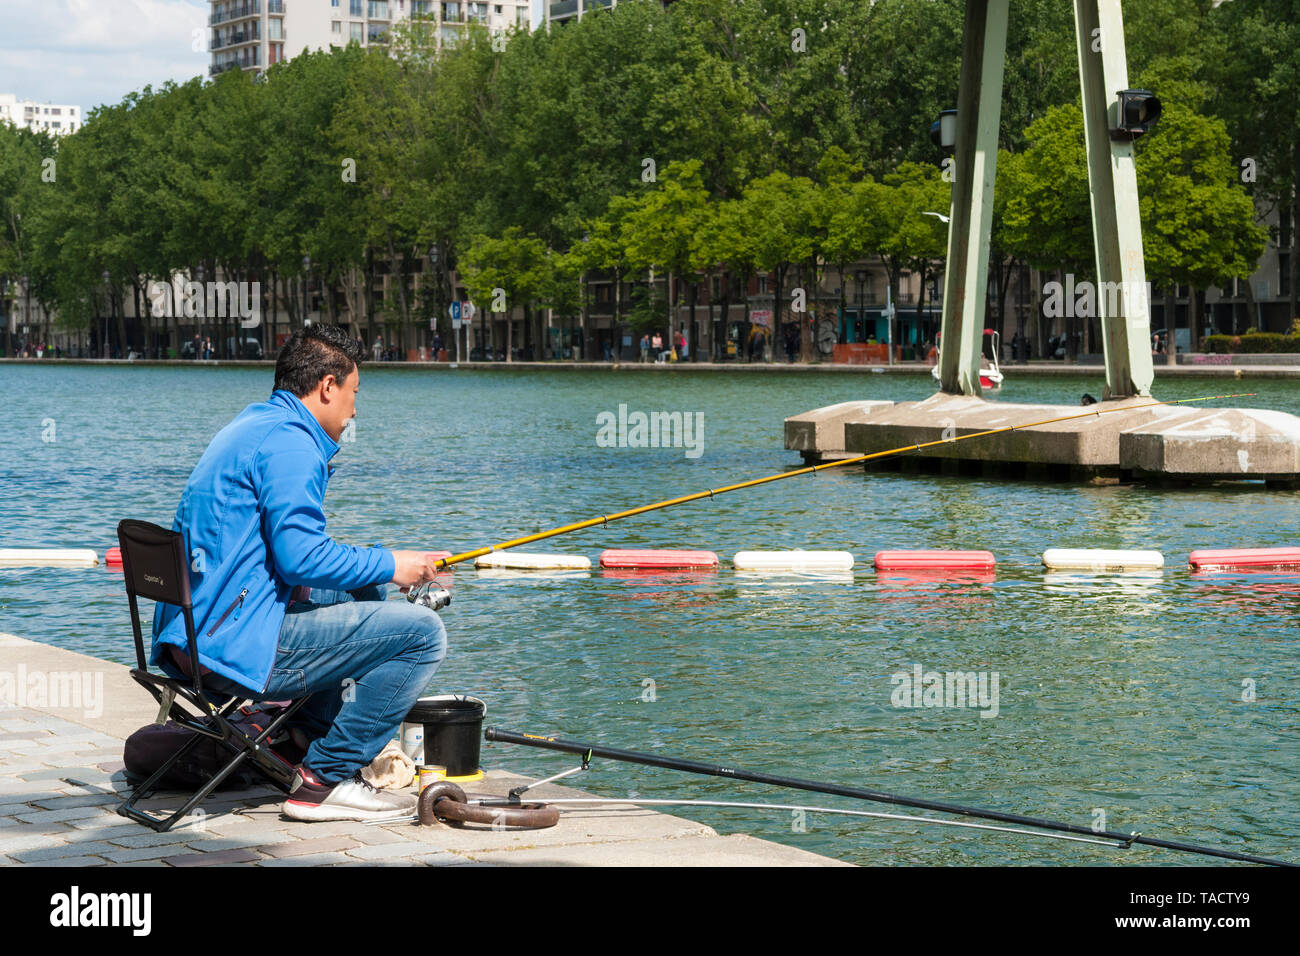 Man fishing in the Bassin de la Villette, Paris, France Stock Photo